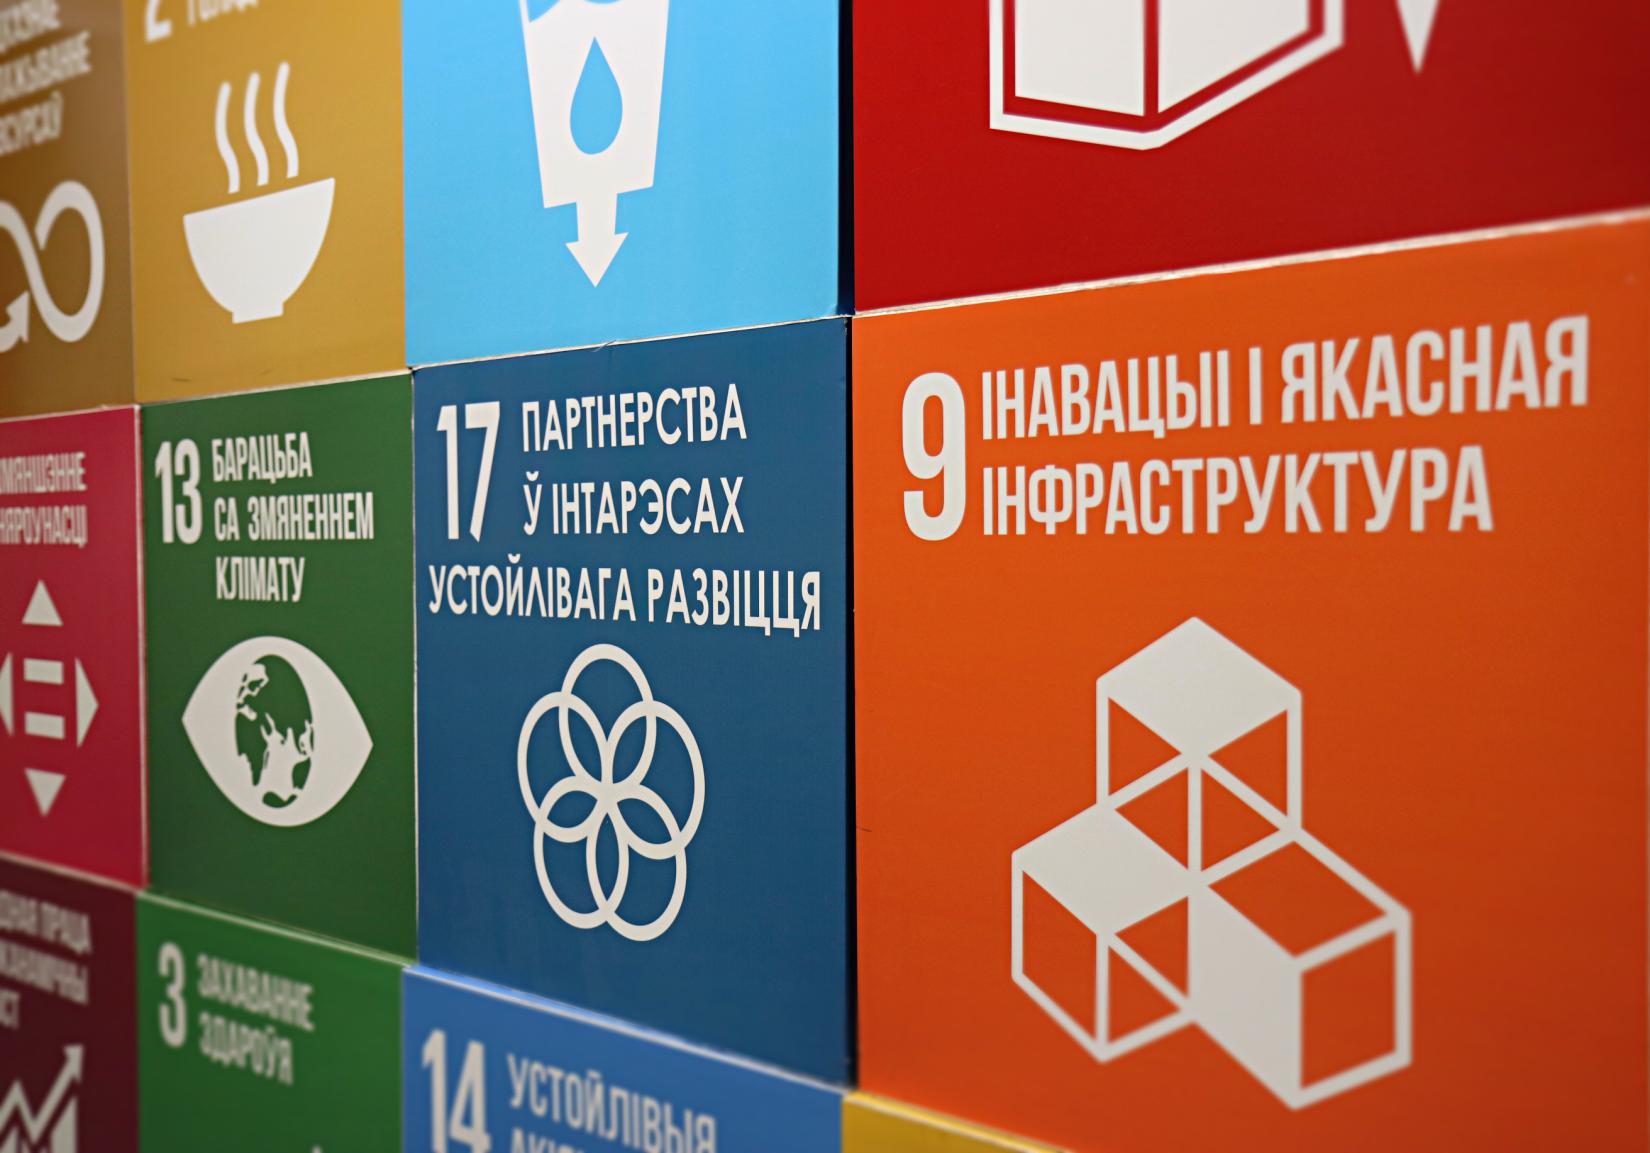 Агентства ООН объединяют усилия для продвижения новых подходов к финансированию устойчивого развития в Беларуси